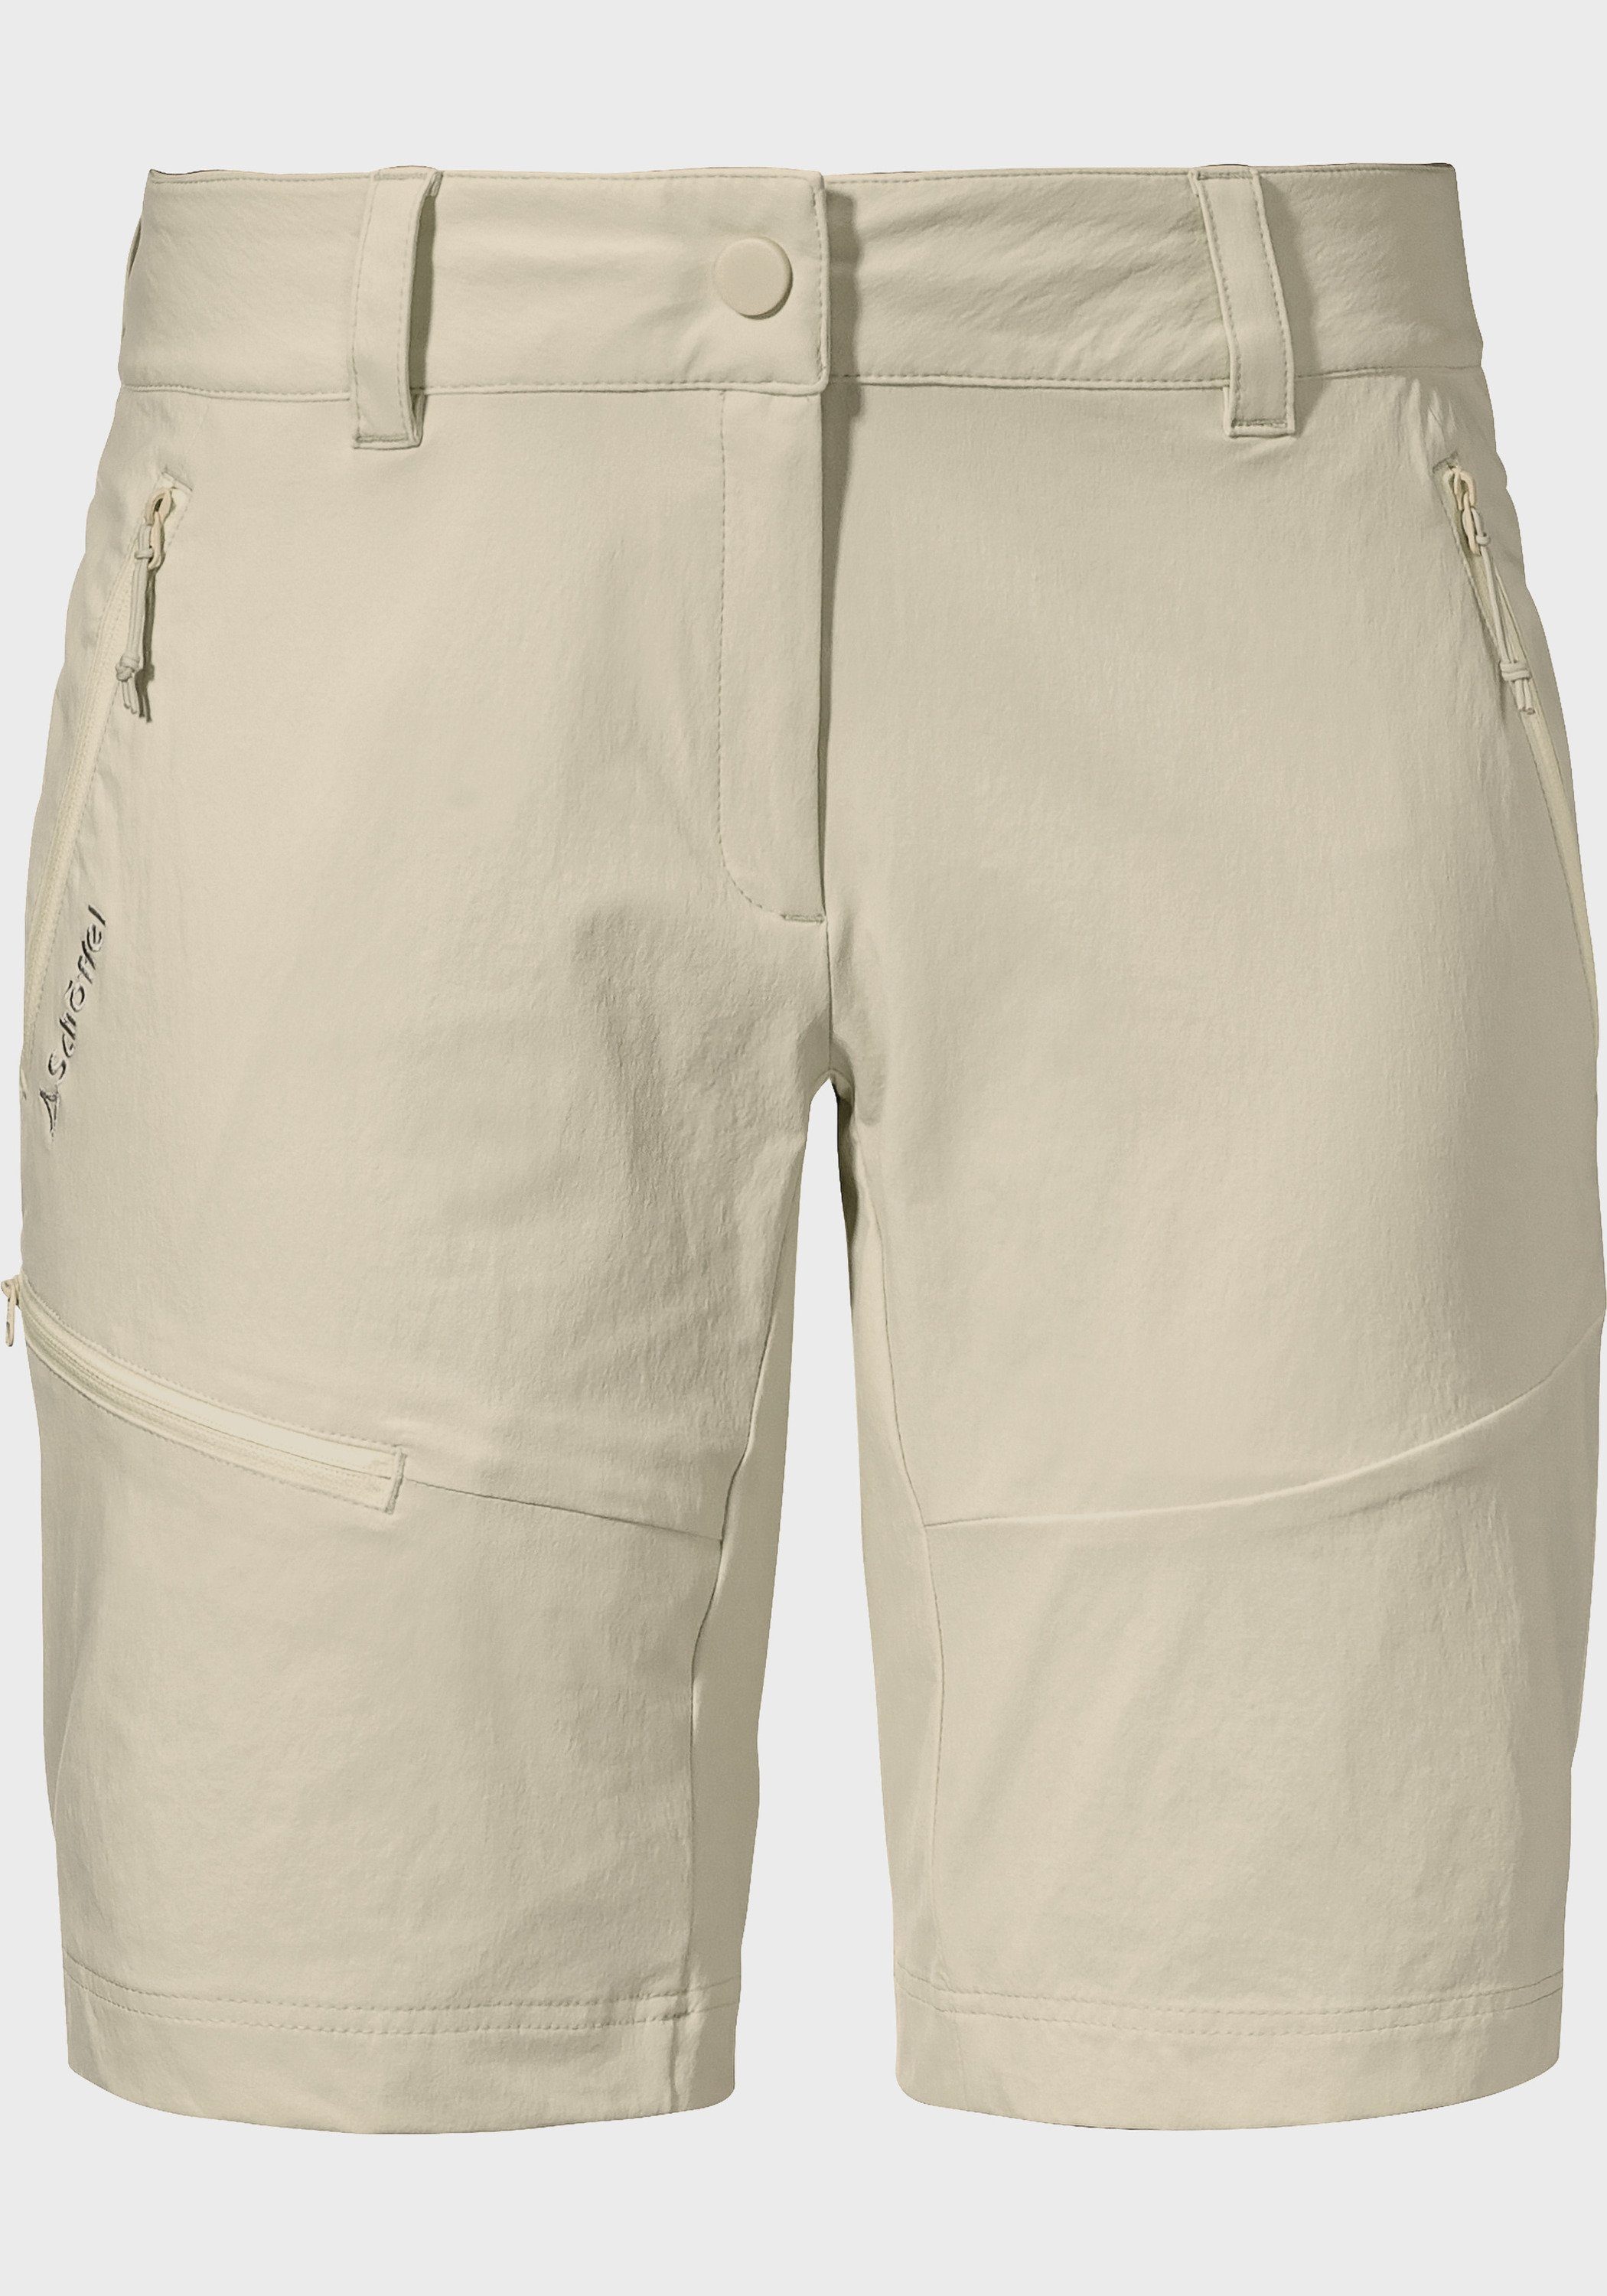 Schöffel Bermudas Shorts Toblach2